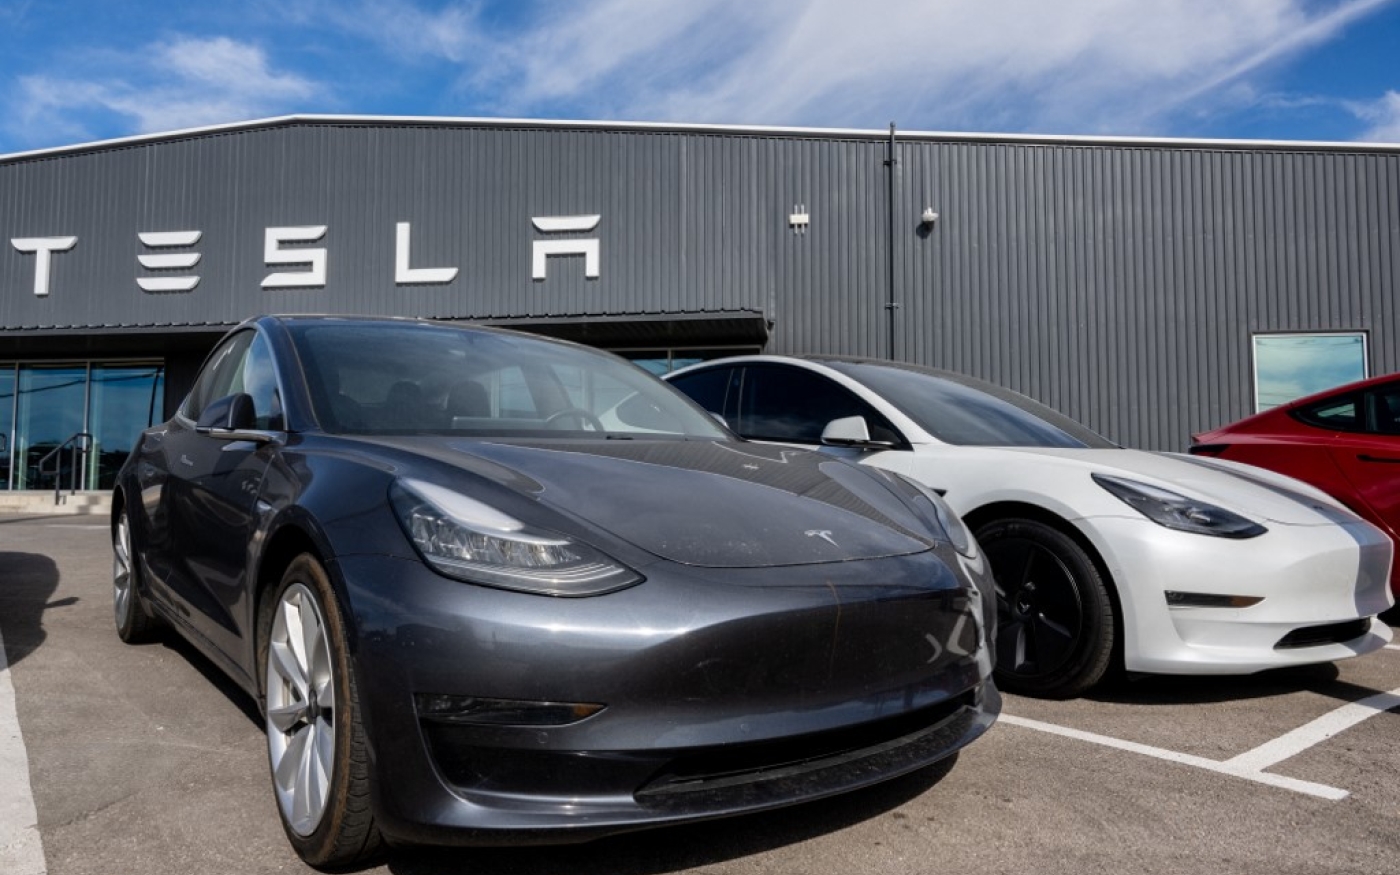 Voitures Tesla chez un concessionnaire d’Austin, au Texas, le 3 janvier 2023 (AFP)